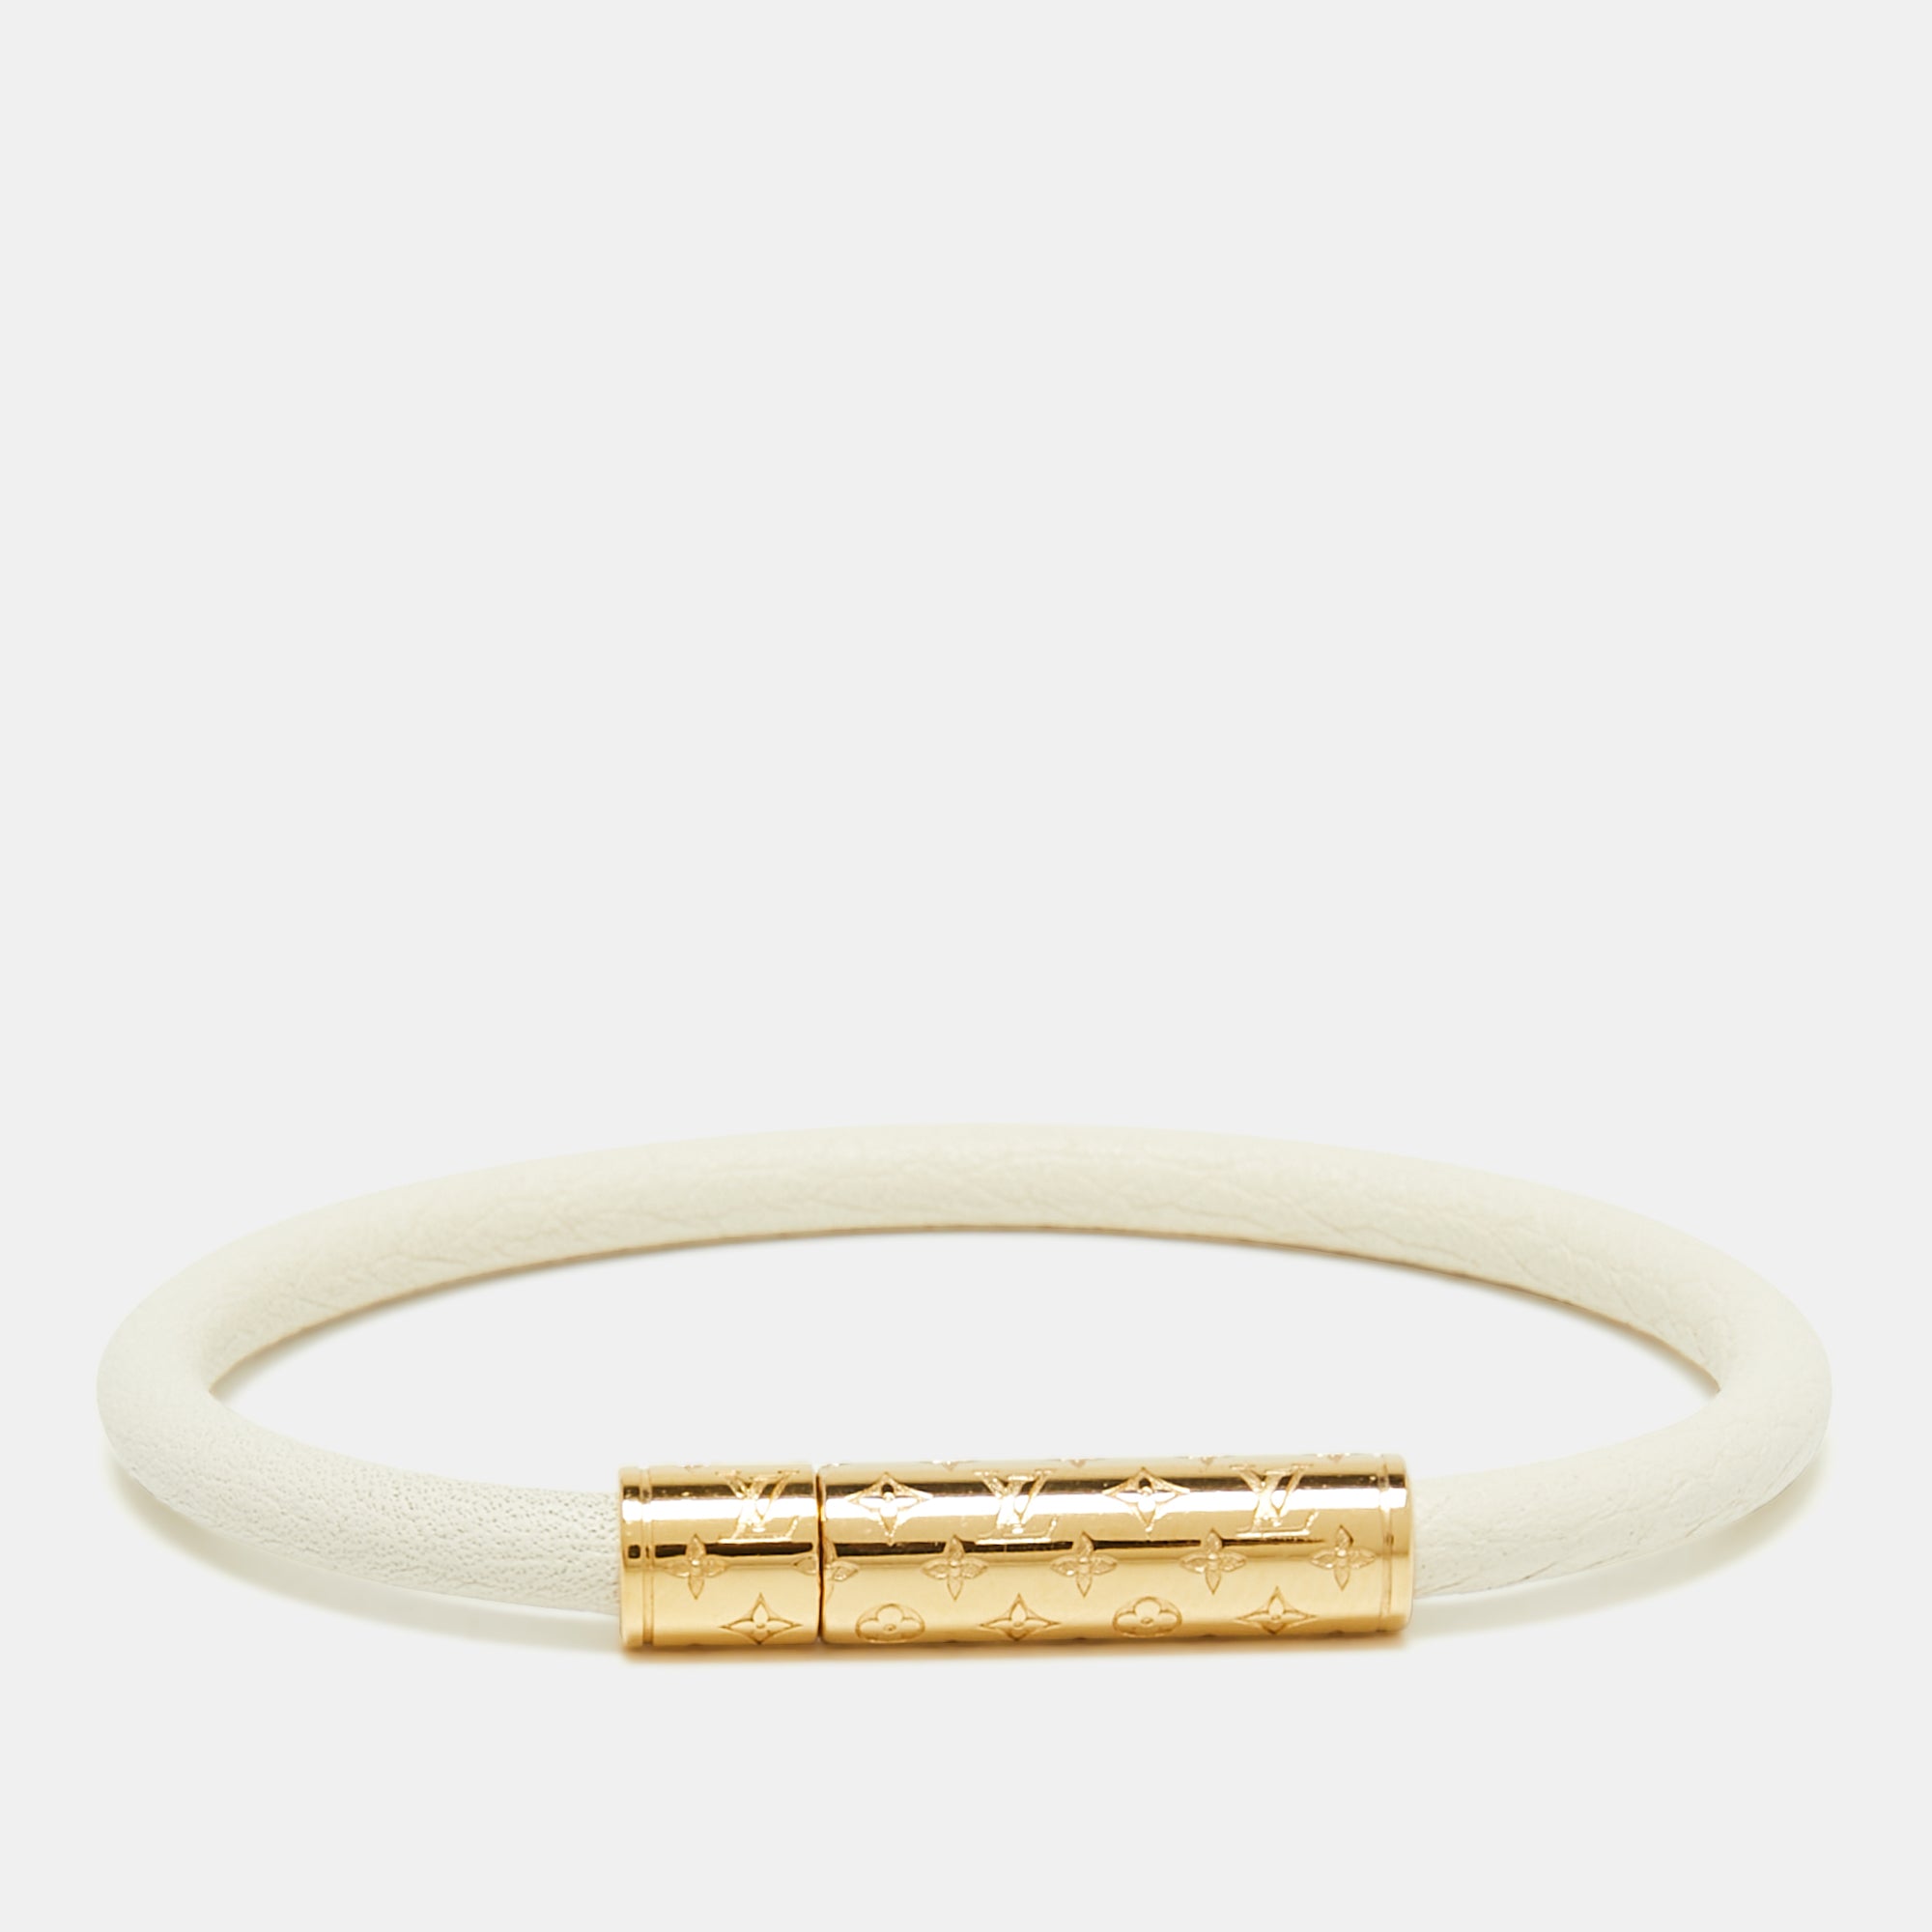 Louis Vuitton White Leather Confidential Bracelet